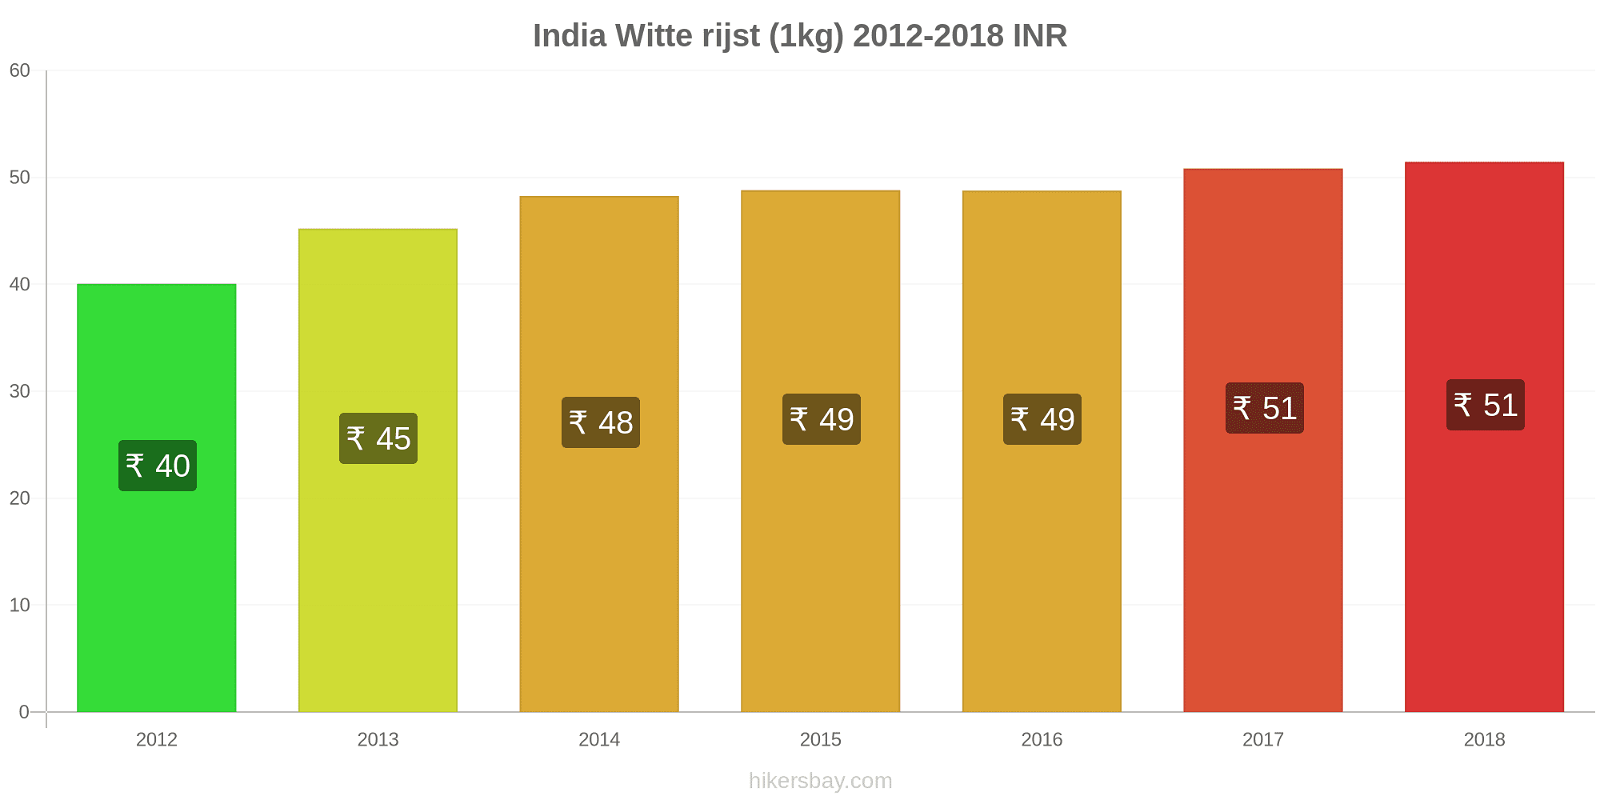 India prijswijzigingen Rijst (wit) (1kg) hikersbay.com